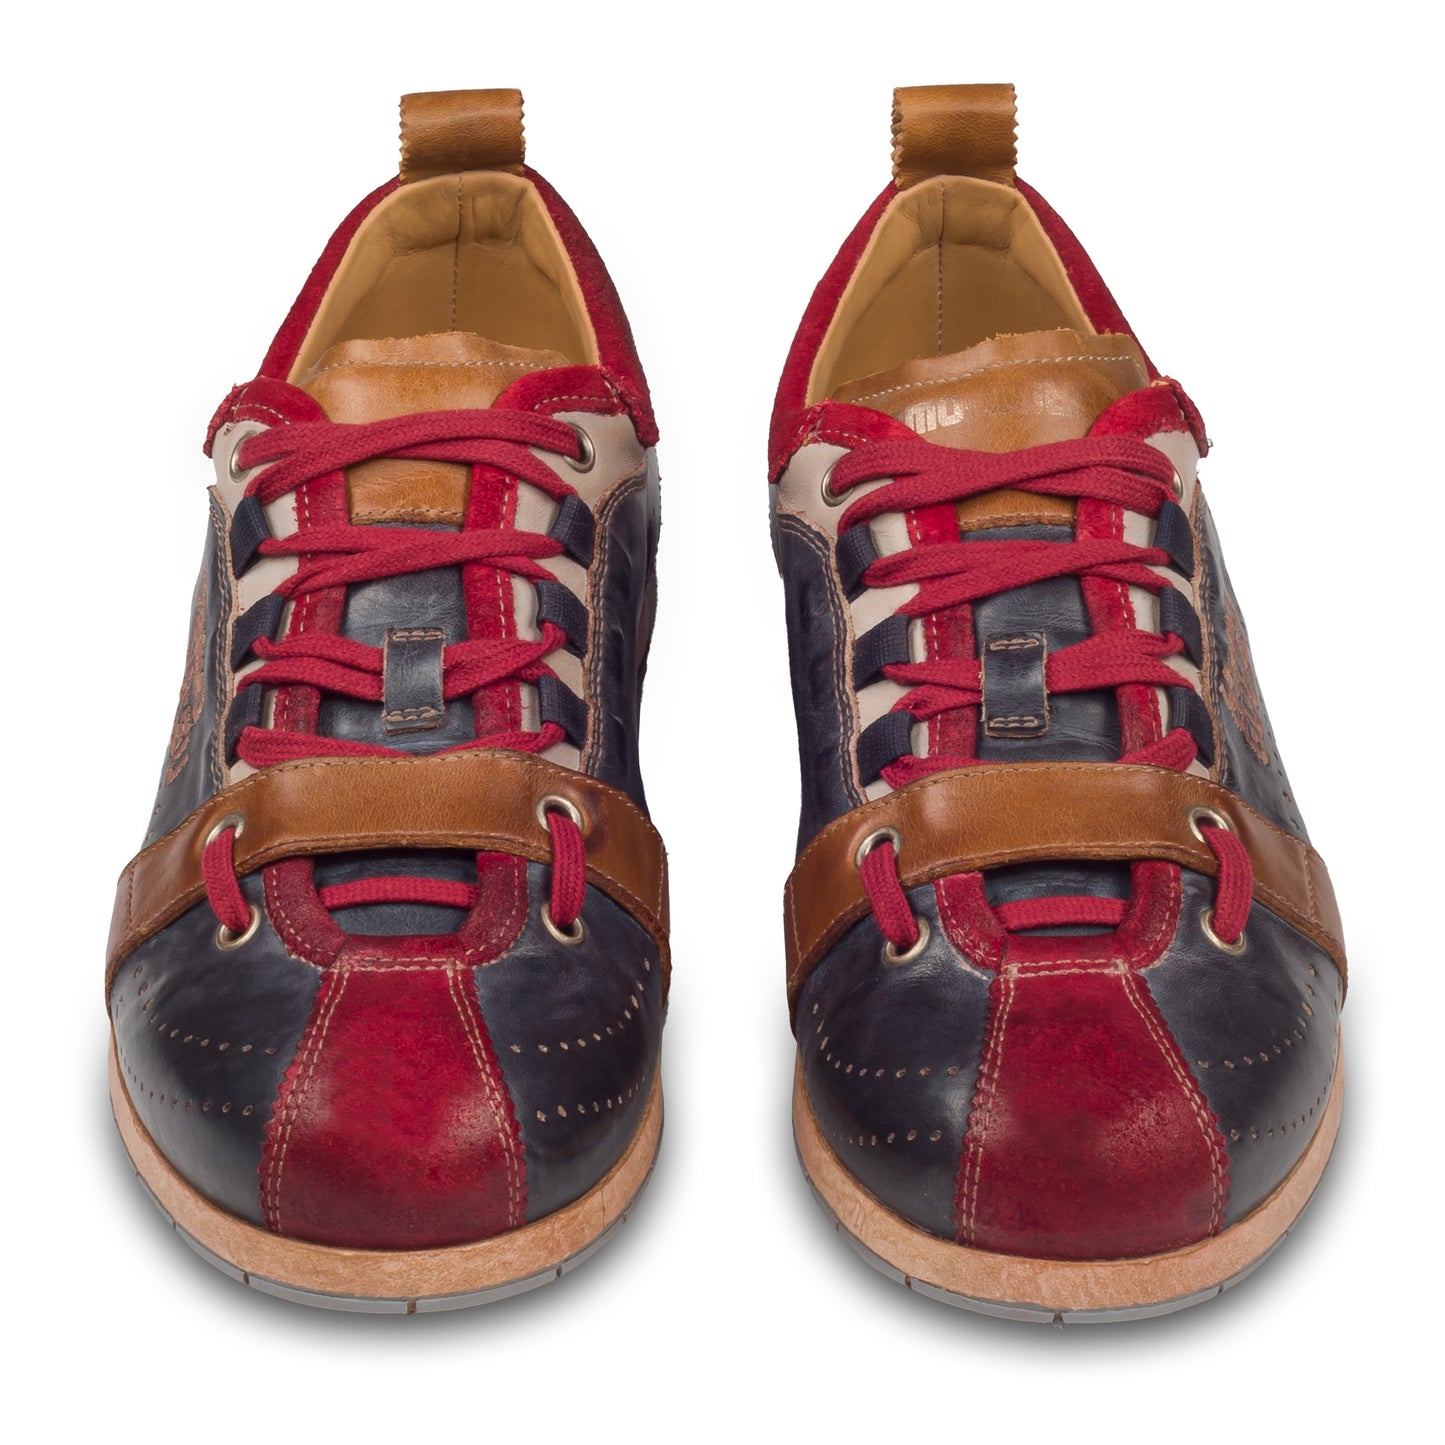 KAMO-GUTSU Herren Leder Sneaker, blau/rot mit braun, Modell TIFO-017 rosso + navy. Handgefertigt. Paarweise Ansicht von vorne.